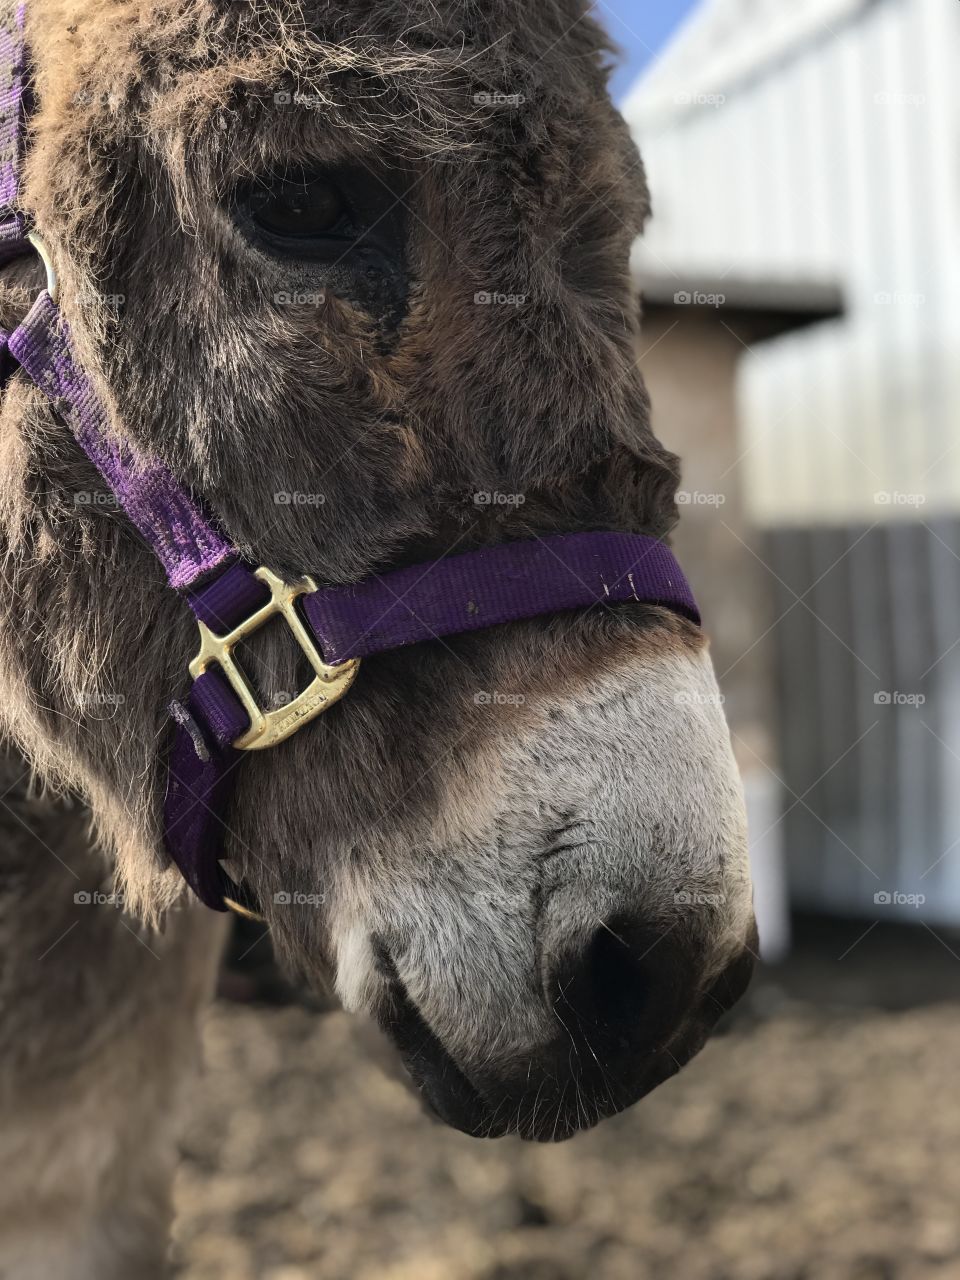 Donkey close up. Donkey. Farm. Spring